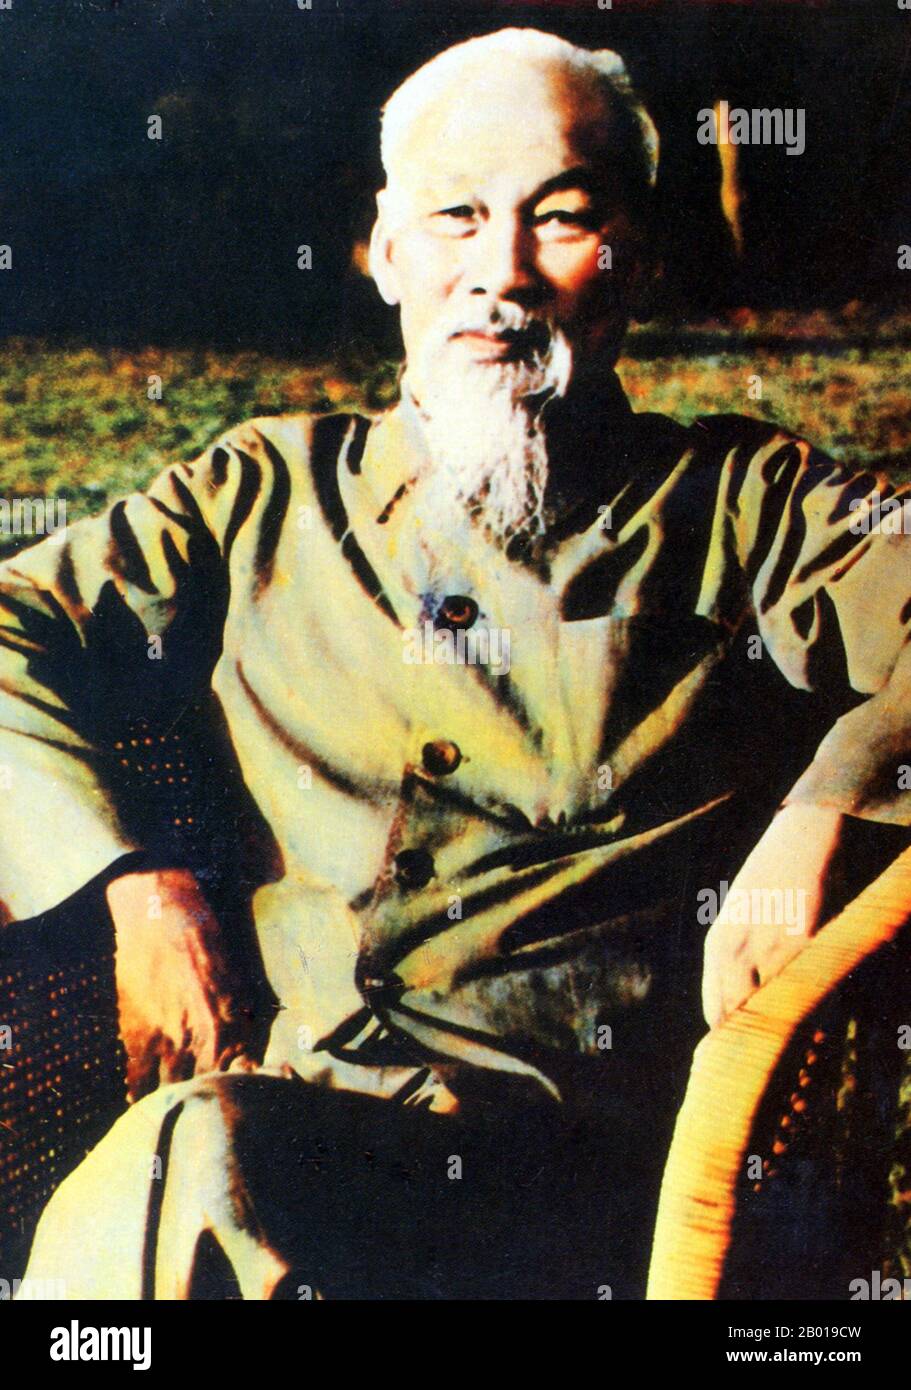 Vietnam: Präsident Ho Chi Minh (19. Mai 1890 - 3. September 1969) im Präsidentenpalast, Hanoi, c.. 1969. Hồ Chí Minh, geboren als Nguyễn Sinh Cung und auch bekannt als Nguyễn Ái Quốc, war ein vietnamesischer revolutionärer Führer, der Premierminister (1946-1955) und Präsident (1945-1969) der Demokratischen Republik Vietnam (Nordvietnam) war. Er gründete die Demokratische Republik Vietnam und leitete die Viet Cong während des Vietnamkrieges bis zu seinem Tod. Stockfoto